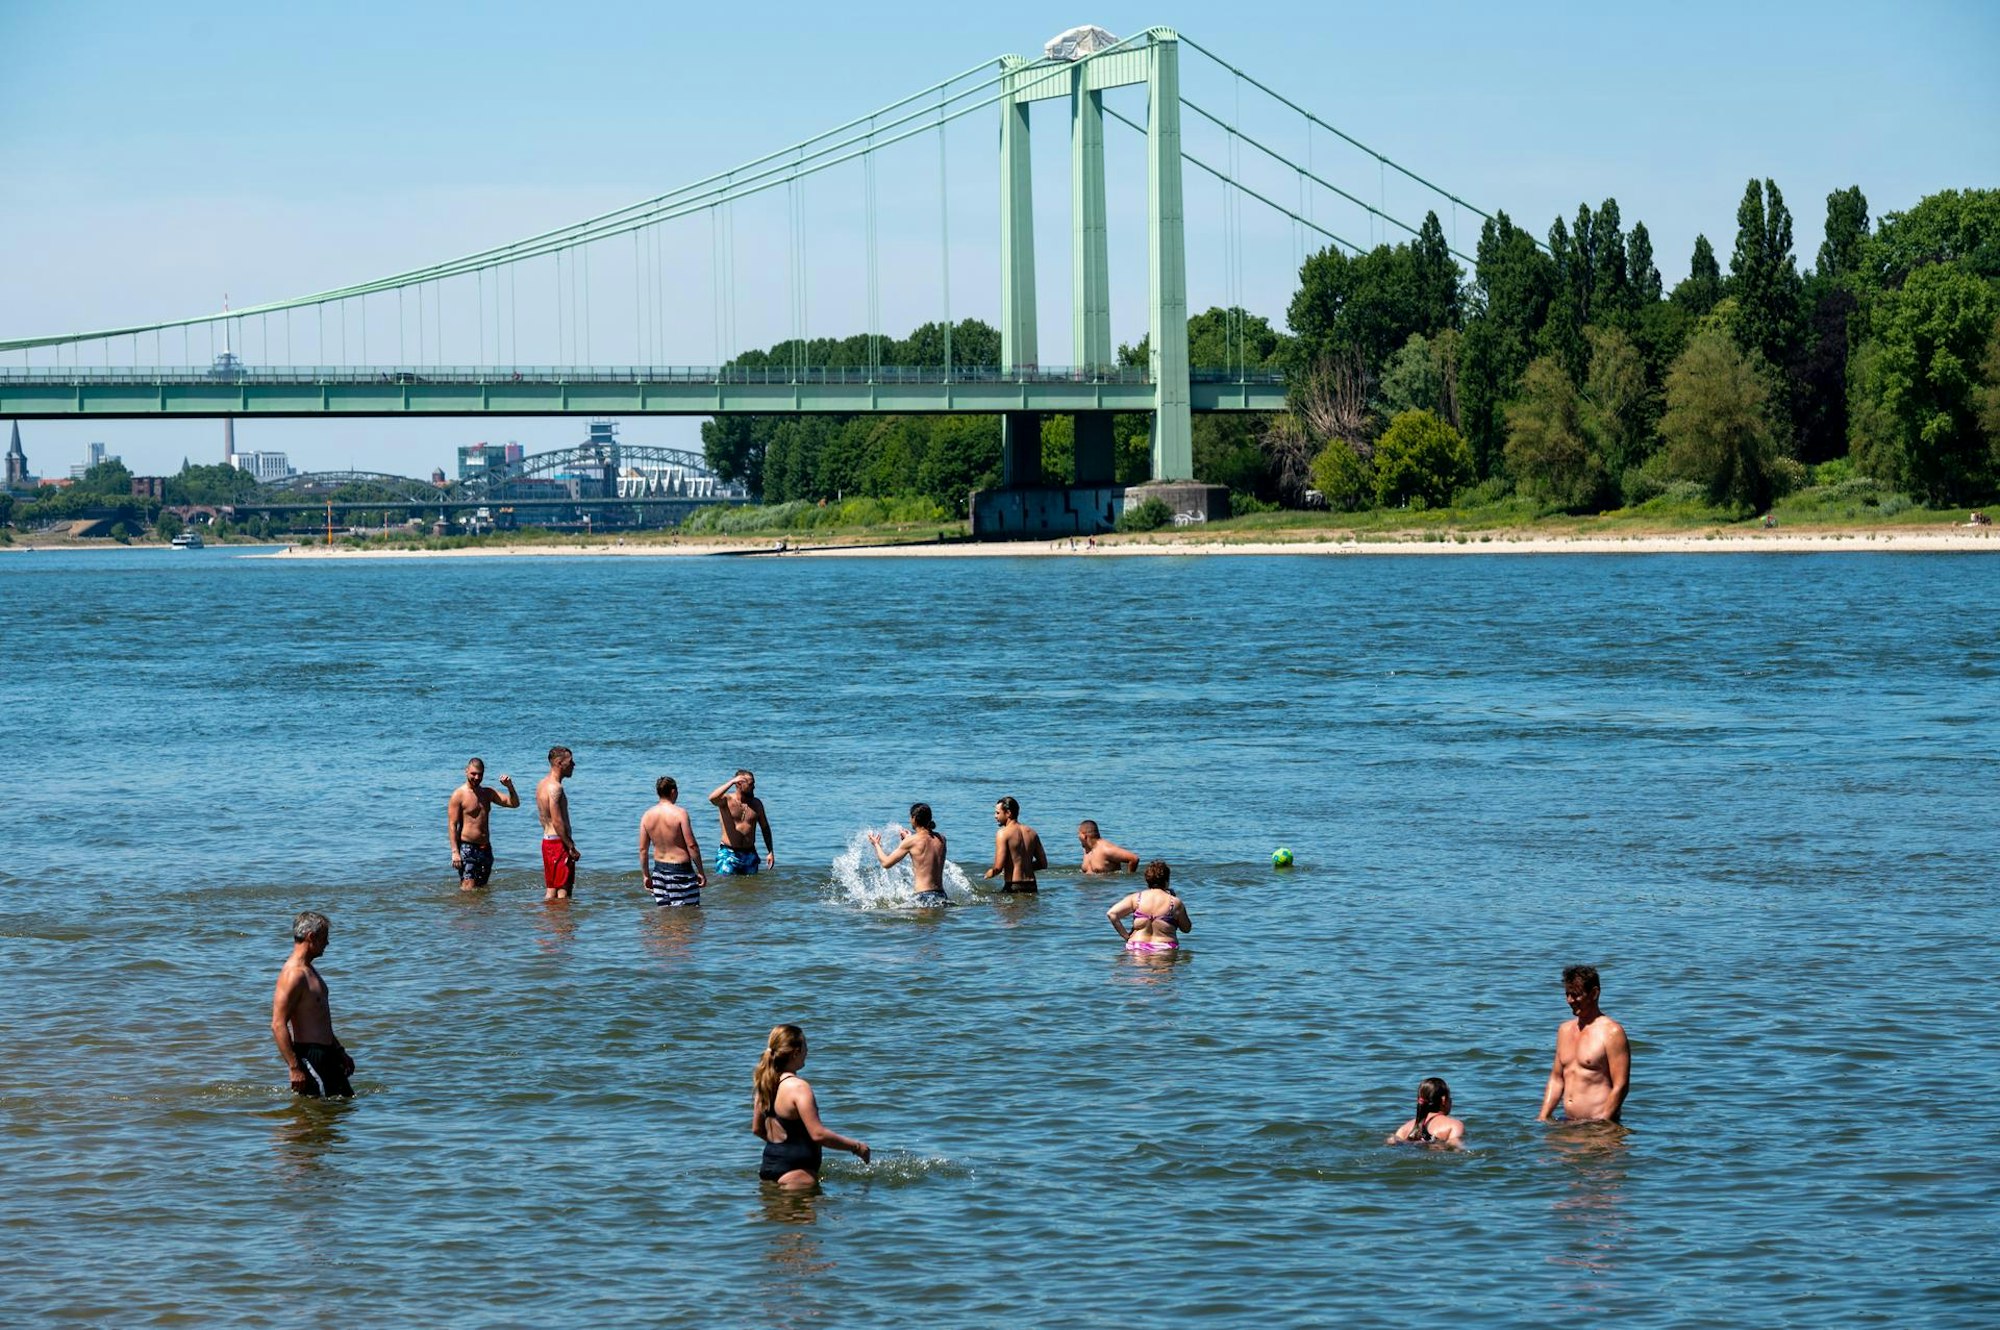 Immer wieder gefährlich: Leute schwimmen im Rhein